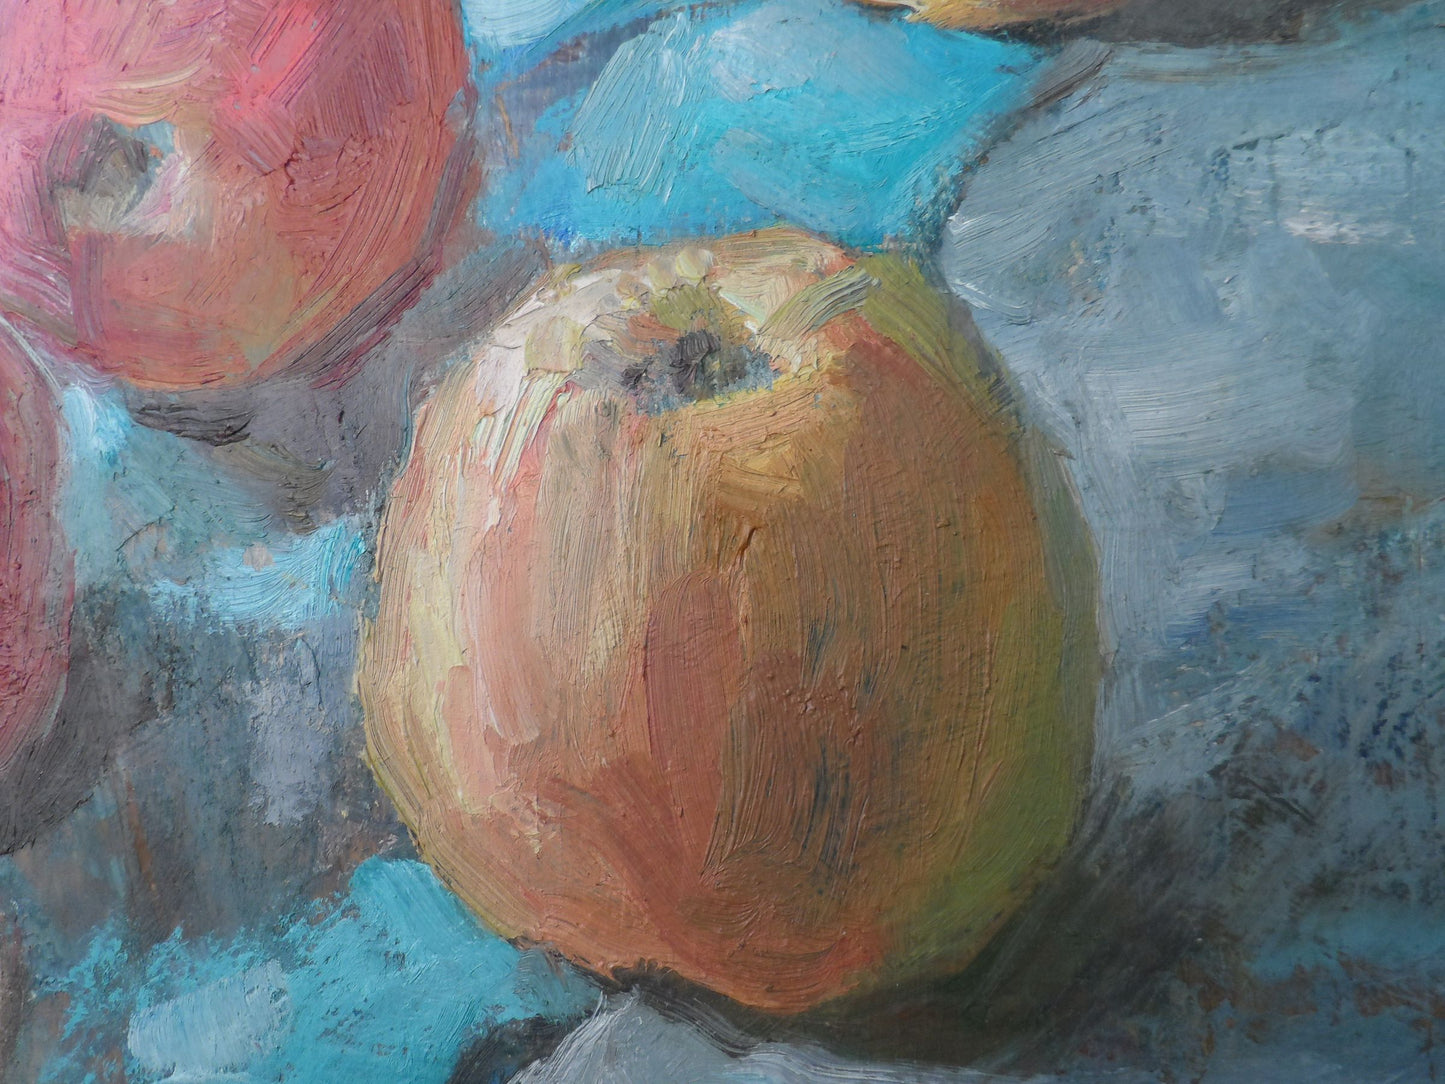 Oil painting Apples Mishurovsky V. V.